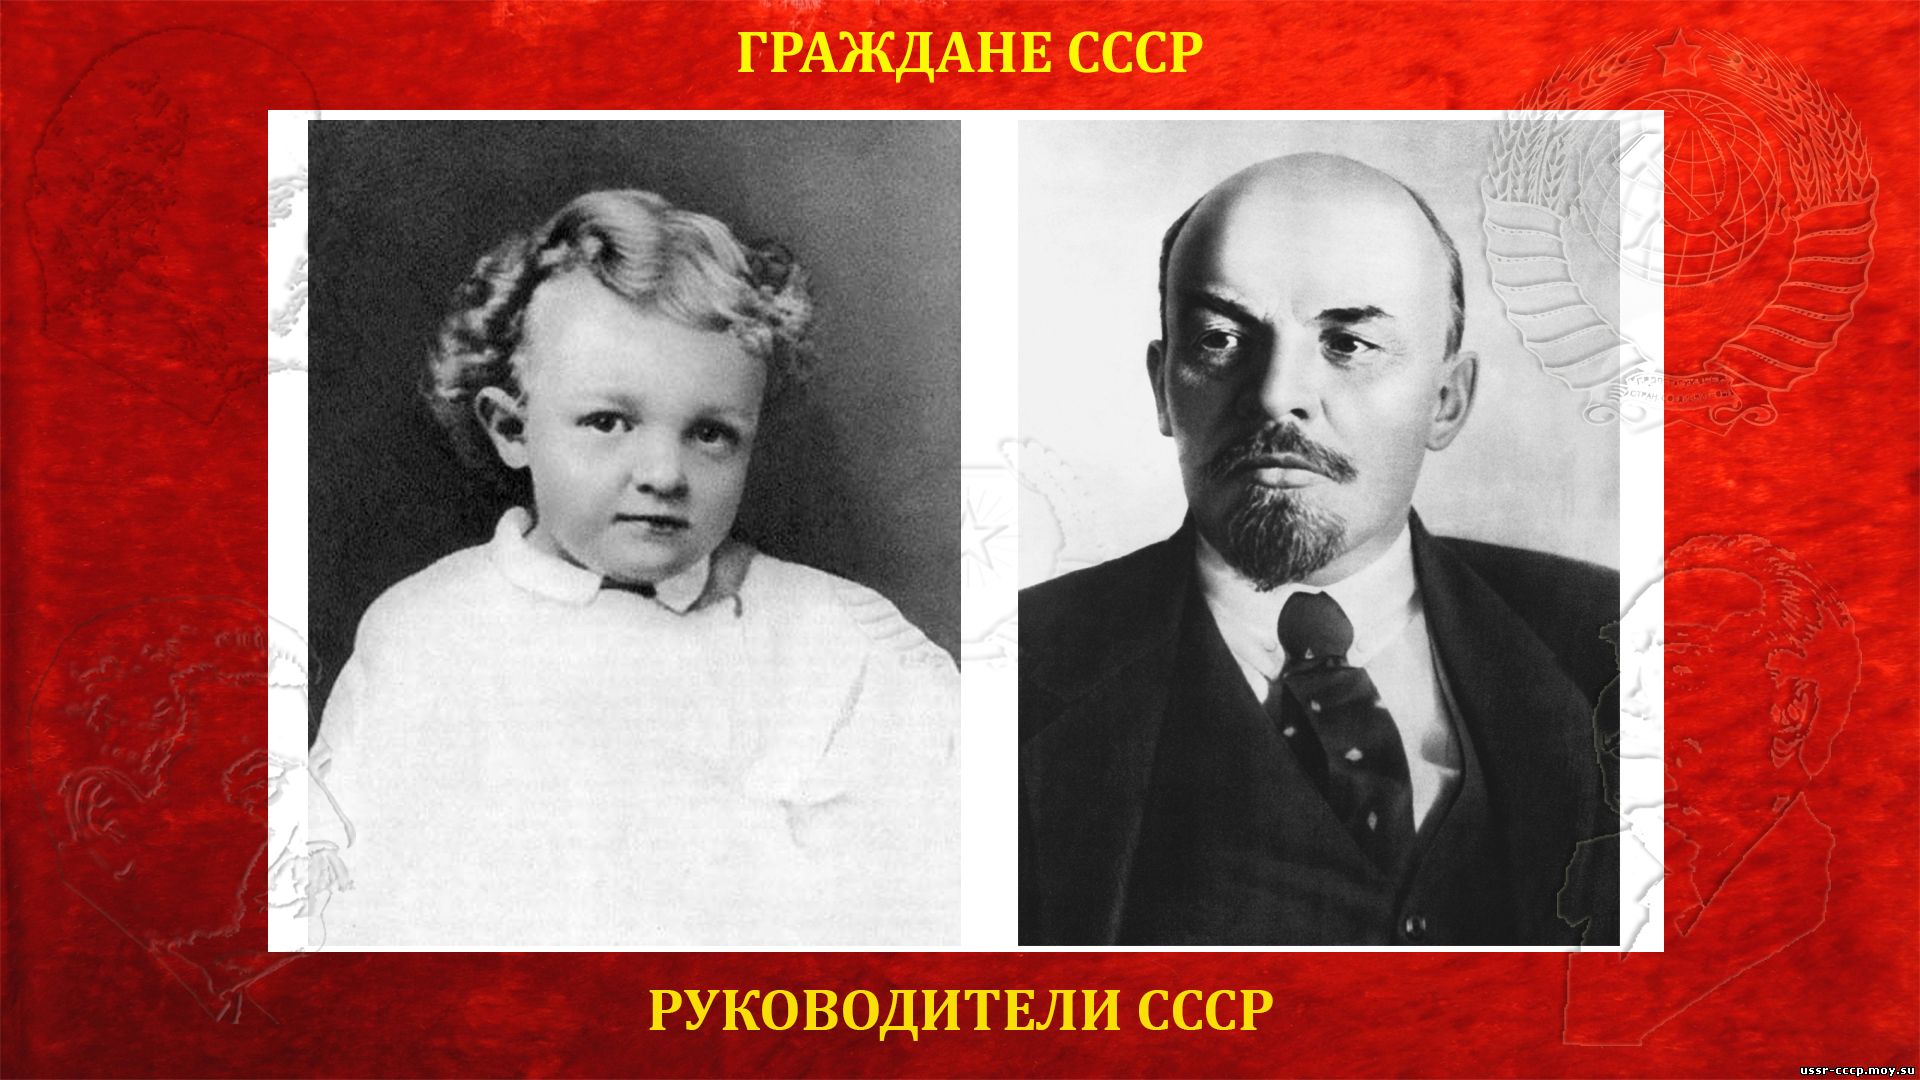 Ленин (Ульянов) Владимир Ильич (биография)